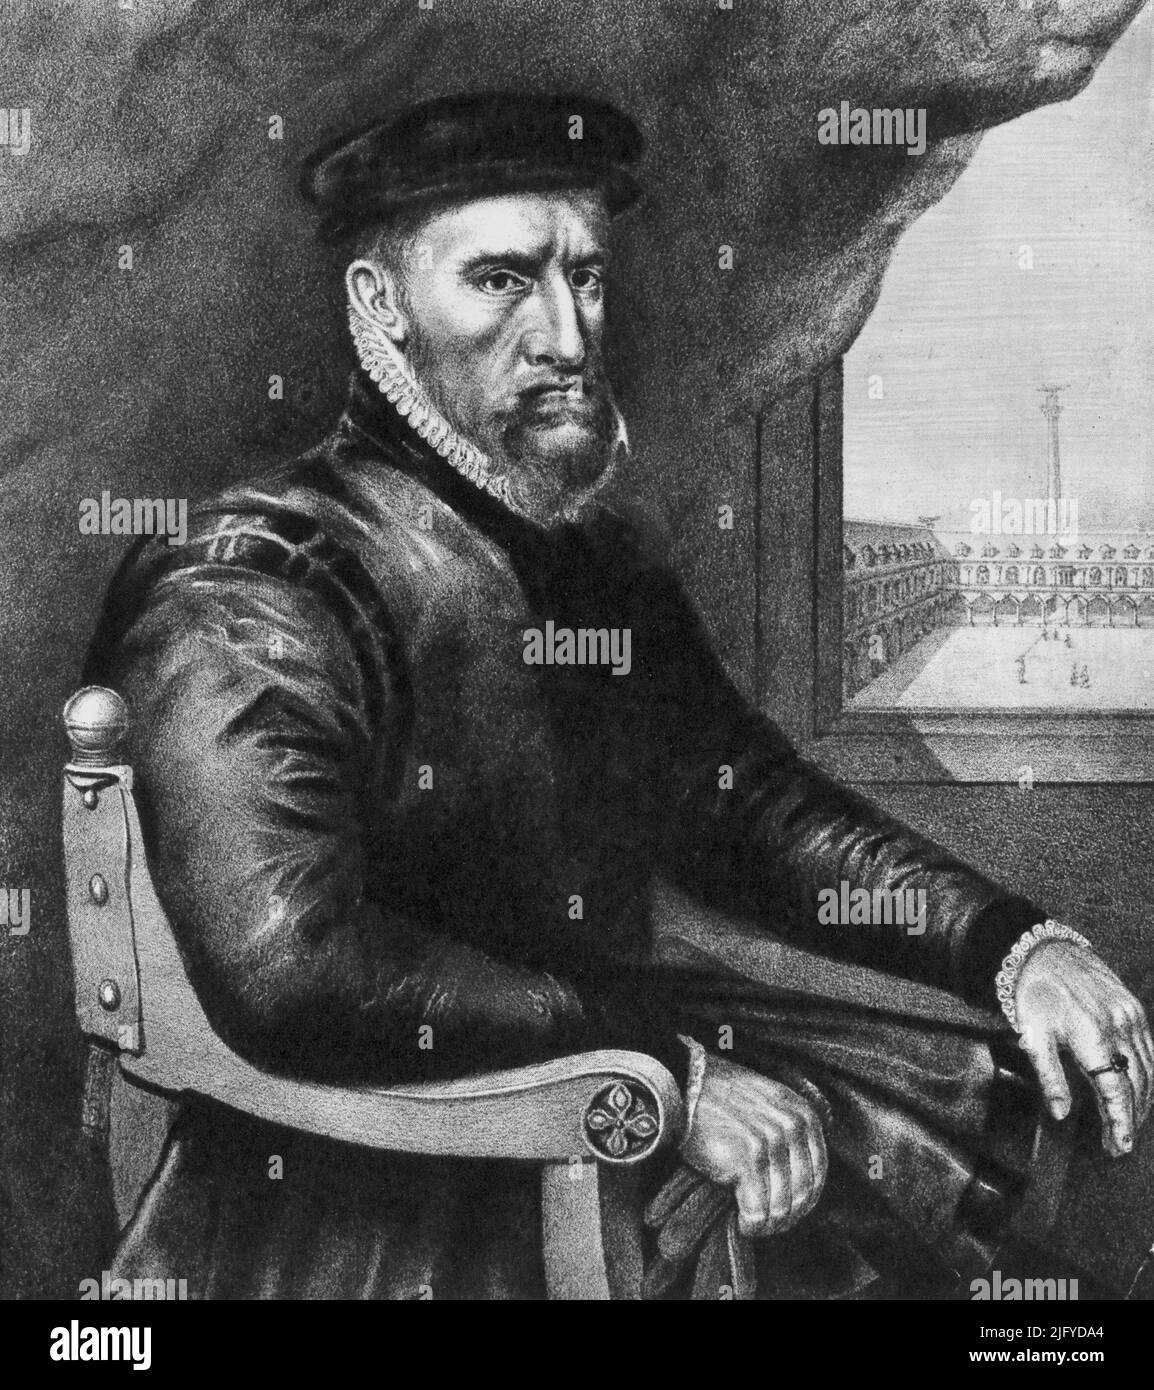 Sir Thomas Gresham der Ältere (c1519-1579). Nach Anthons Mor (c1517-1577). Englischer Kaufmann und Finanzierer, der 1565 die Royal Exchange in der City of London gründete. Stockfoto